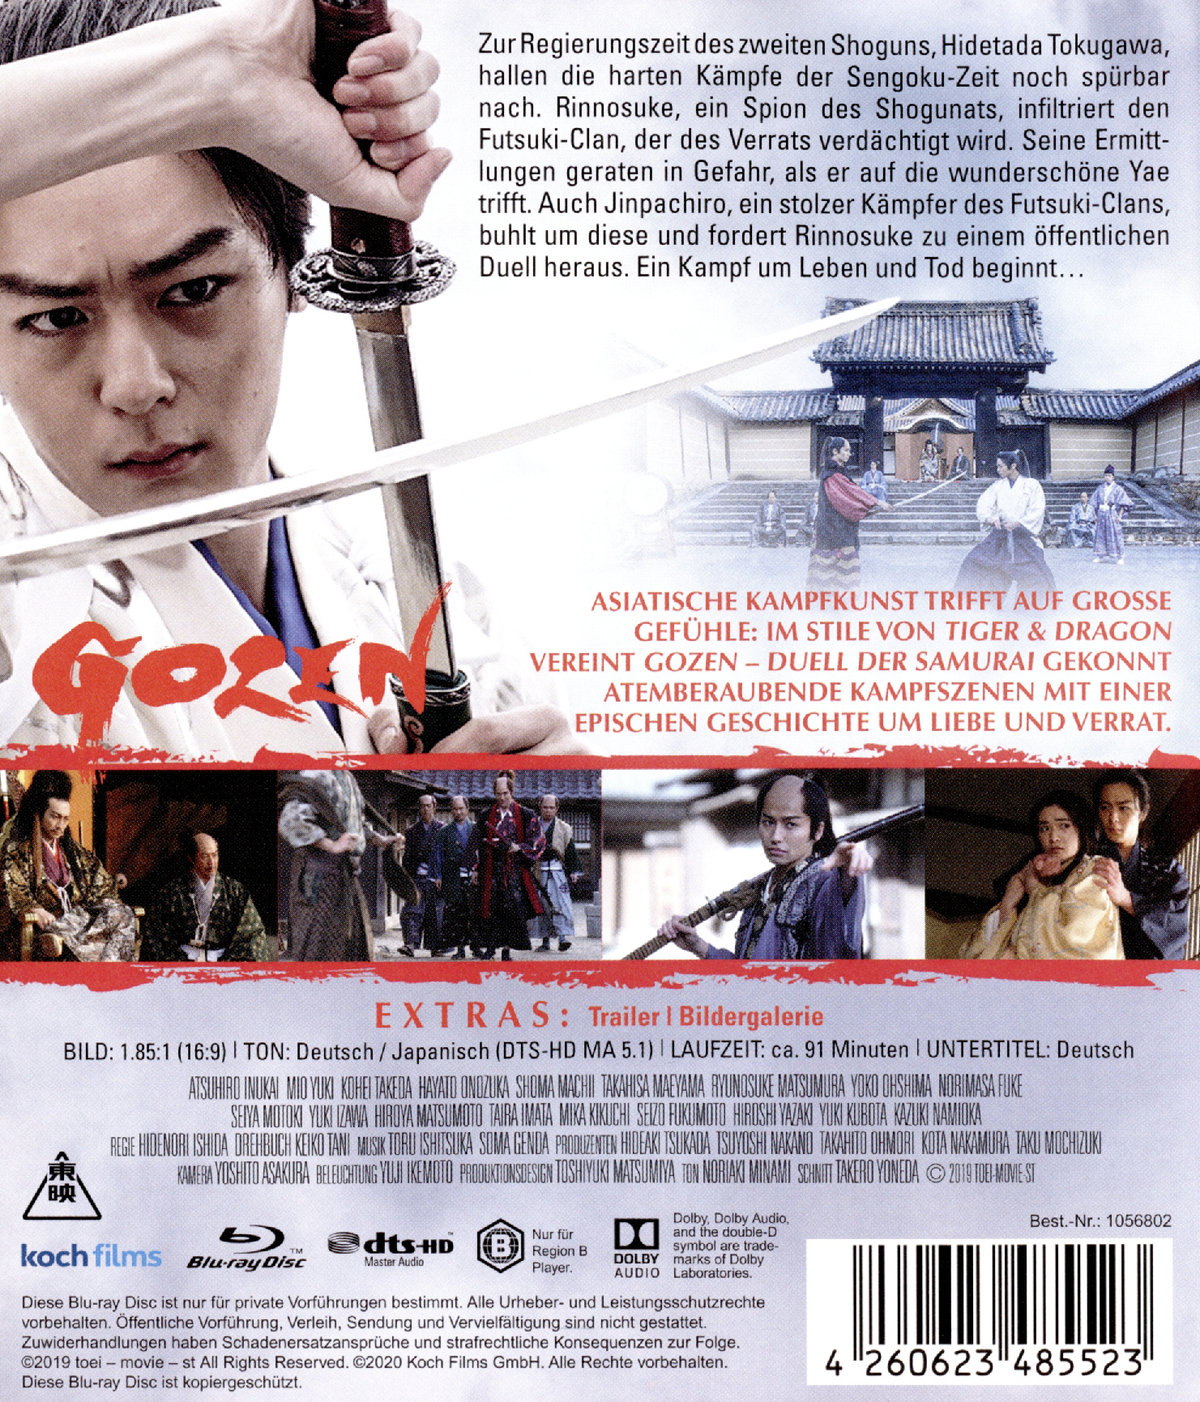 Gozen - Duell der Samurai (blu-ray)